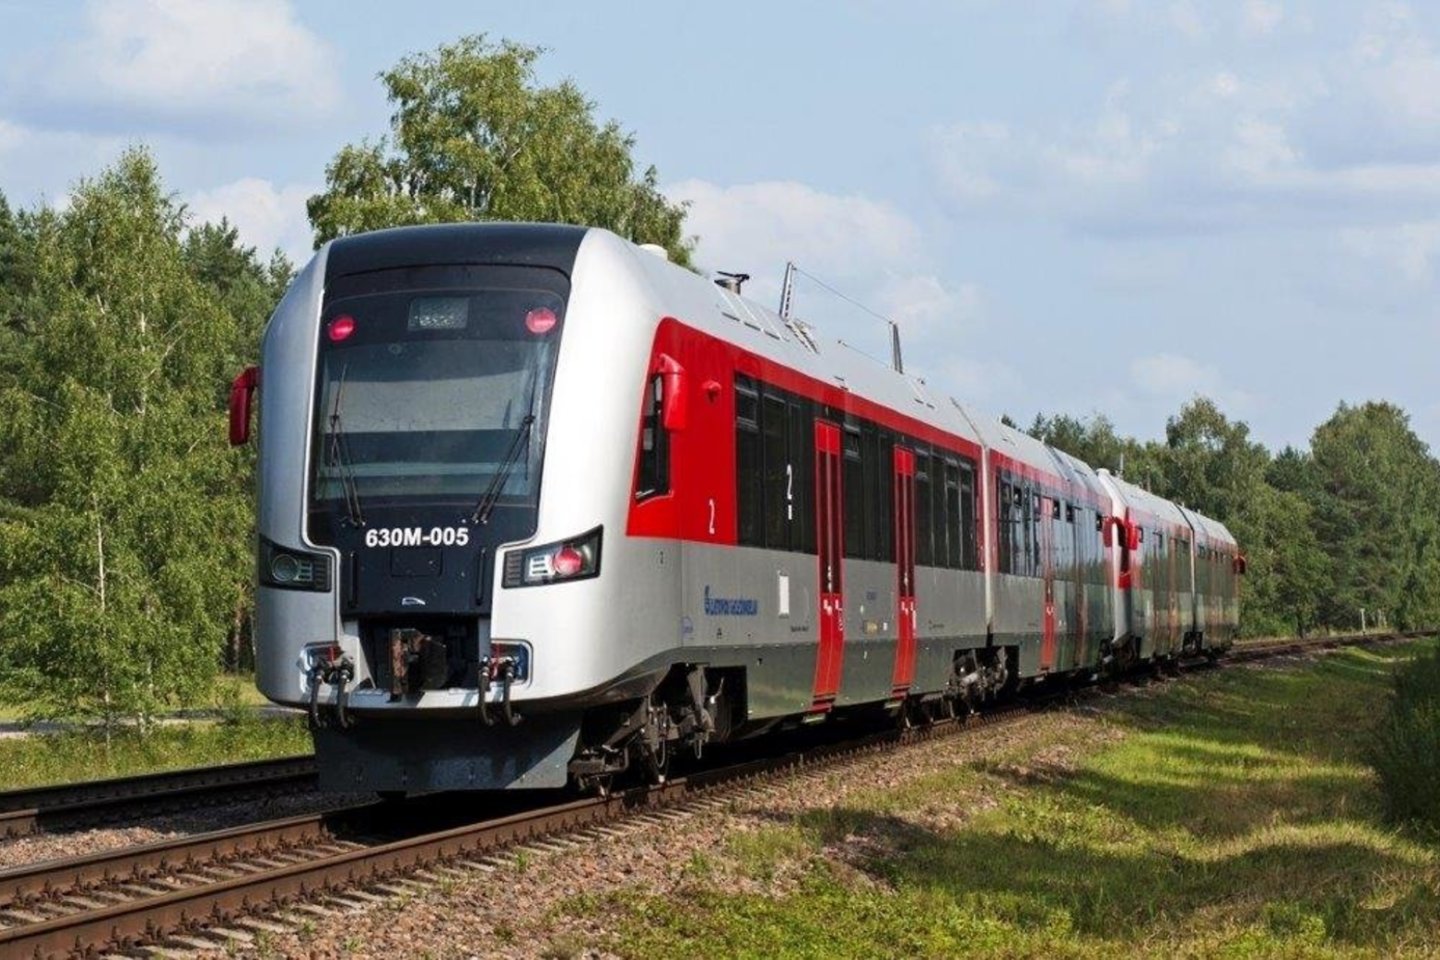   Pagrindinių veiklų išgryninimo programą „LG keičiasi“ įgyvendinanti geležinkelių įmonių grupė „Lietuvos geležinkeliai“ baigia formuoti naują keleivių vežimo bendrovę „LG Keleiviams“. <br> Bendrovės nuotr.